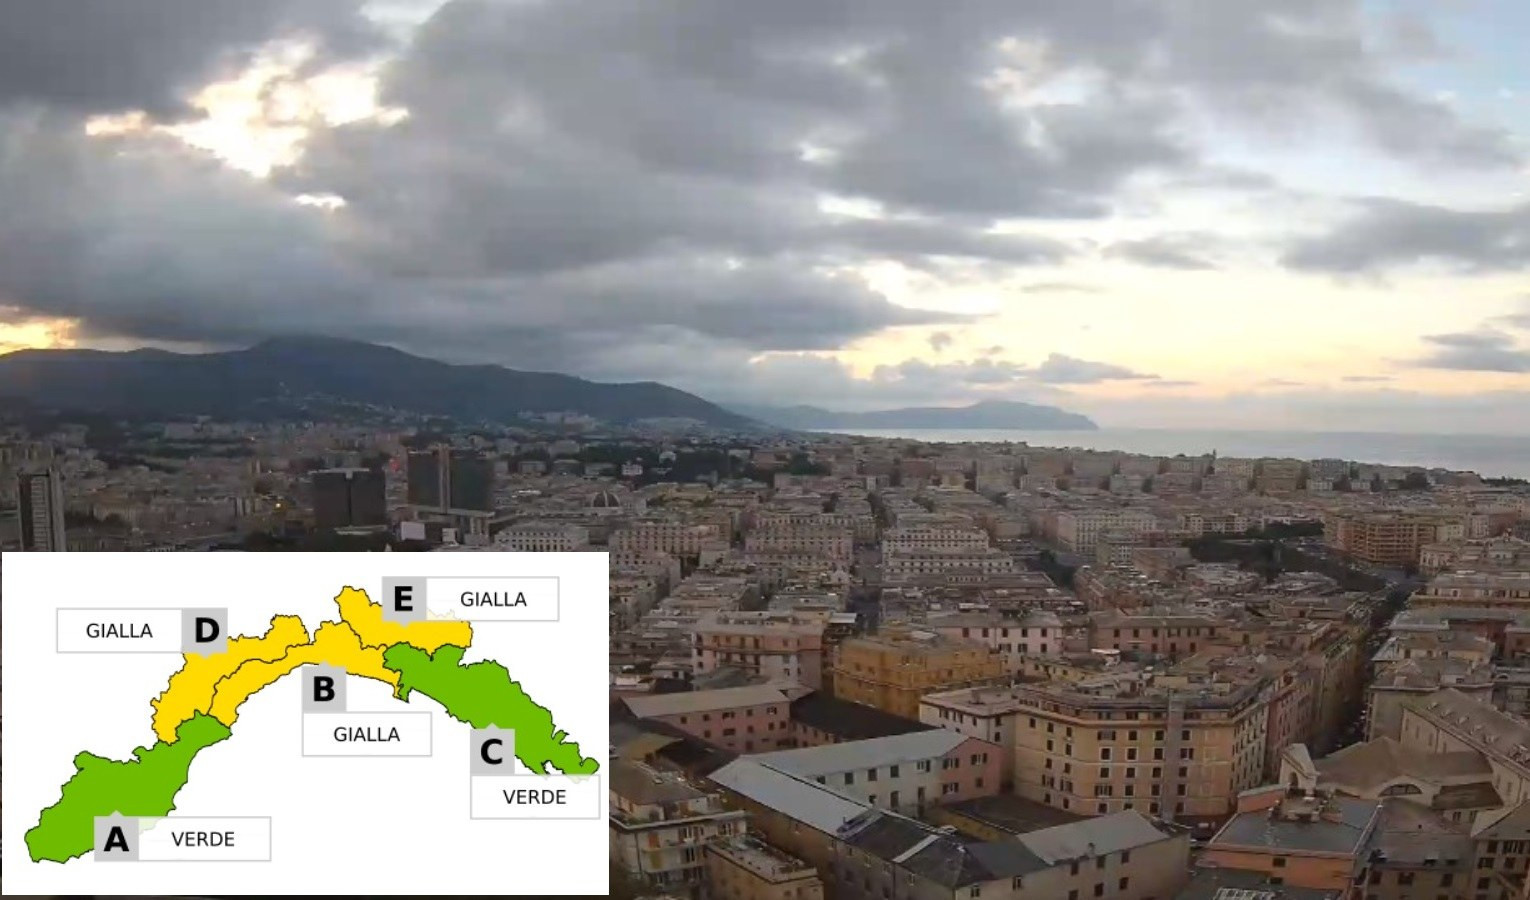 Allerta meteo gialla sul centro e vallate della Liguria: la situazione